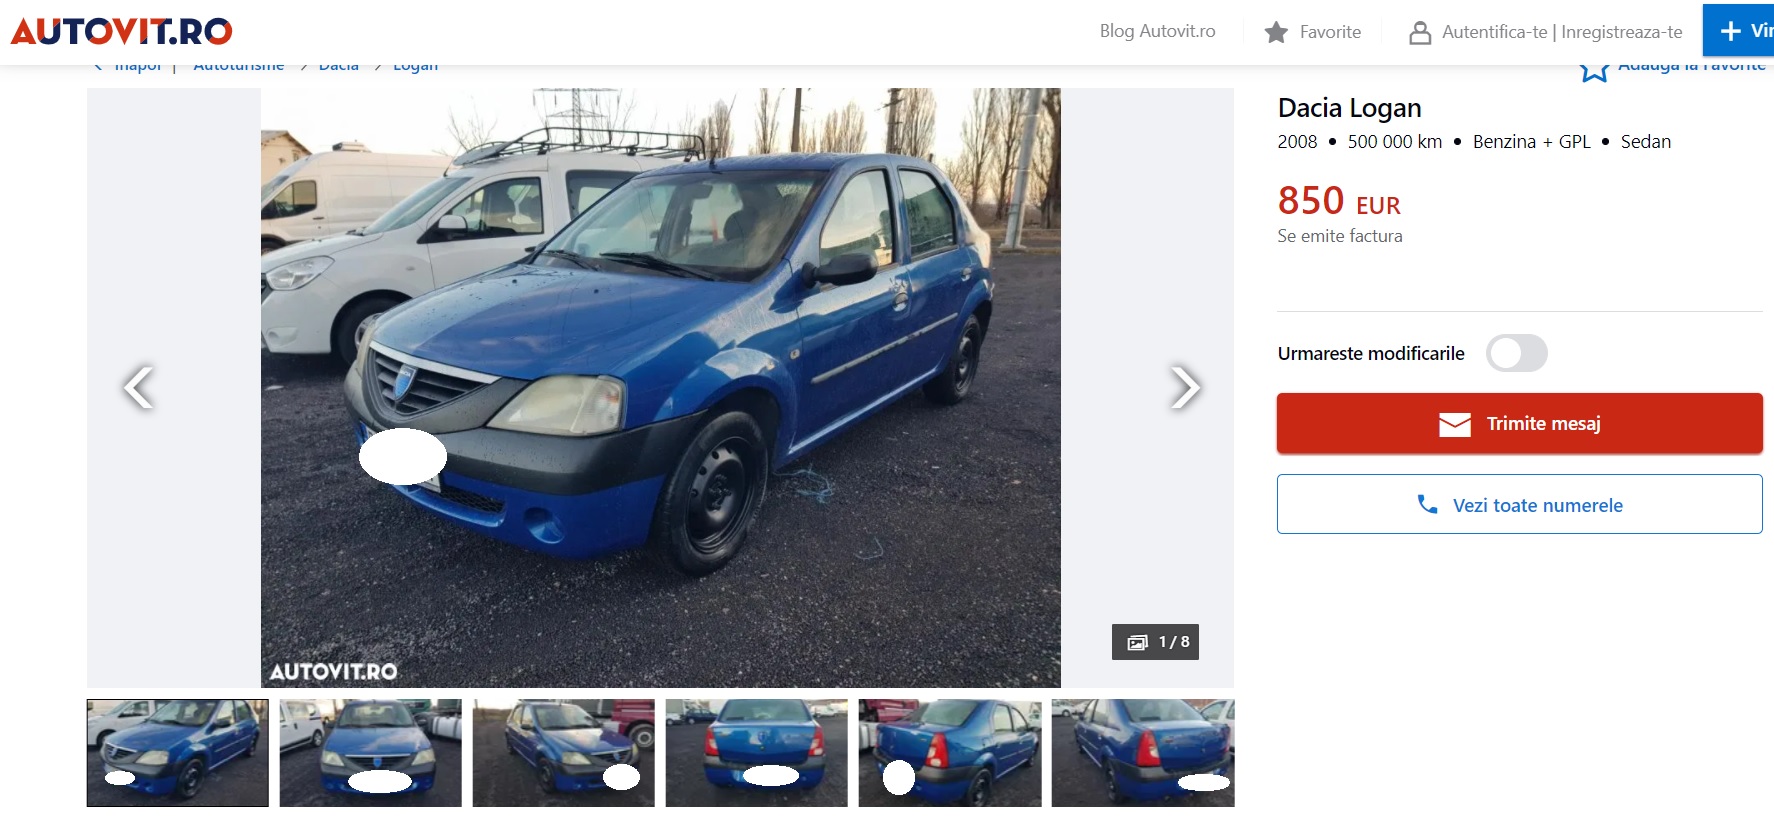 Cum arată și cât costa cea mai ieftină Dacia Logan care se vinde acum pe Autovit